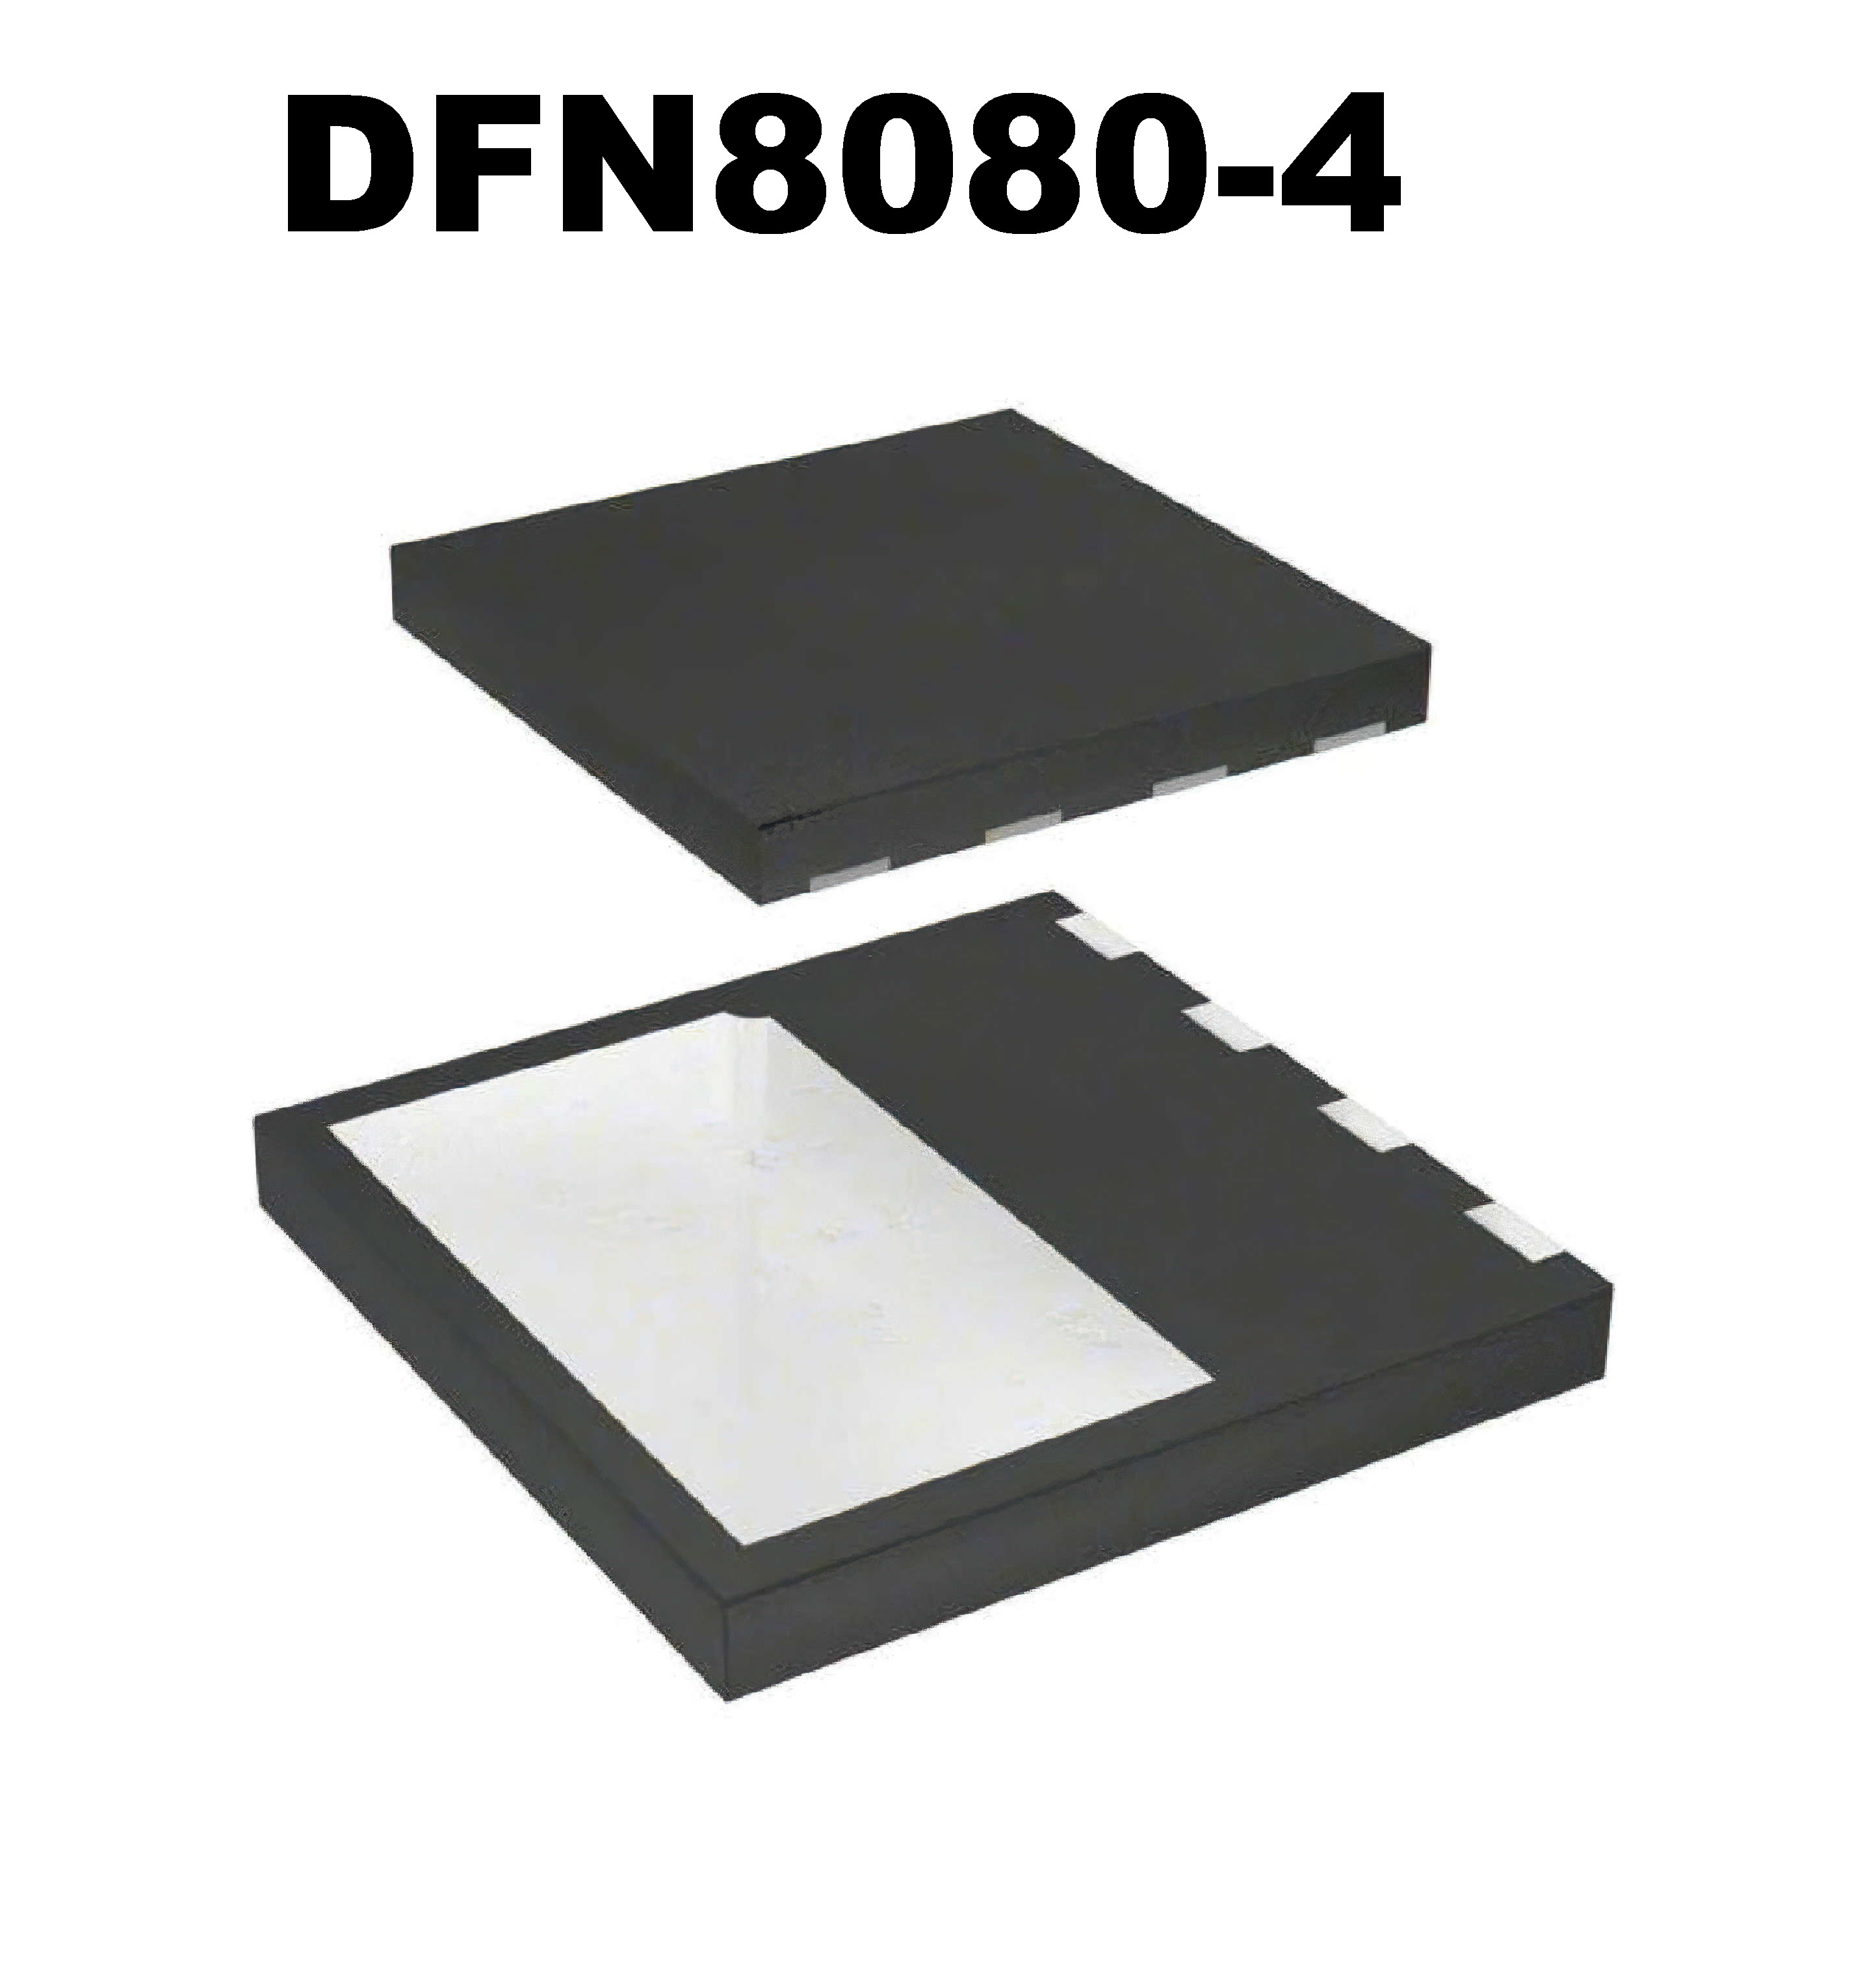 DFN8080-4